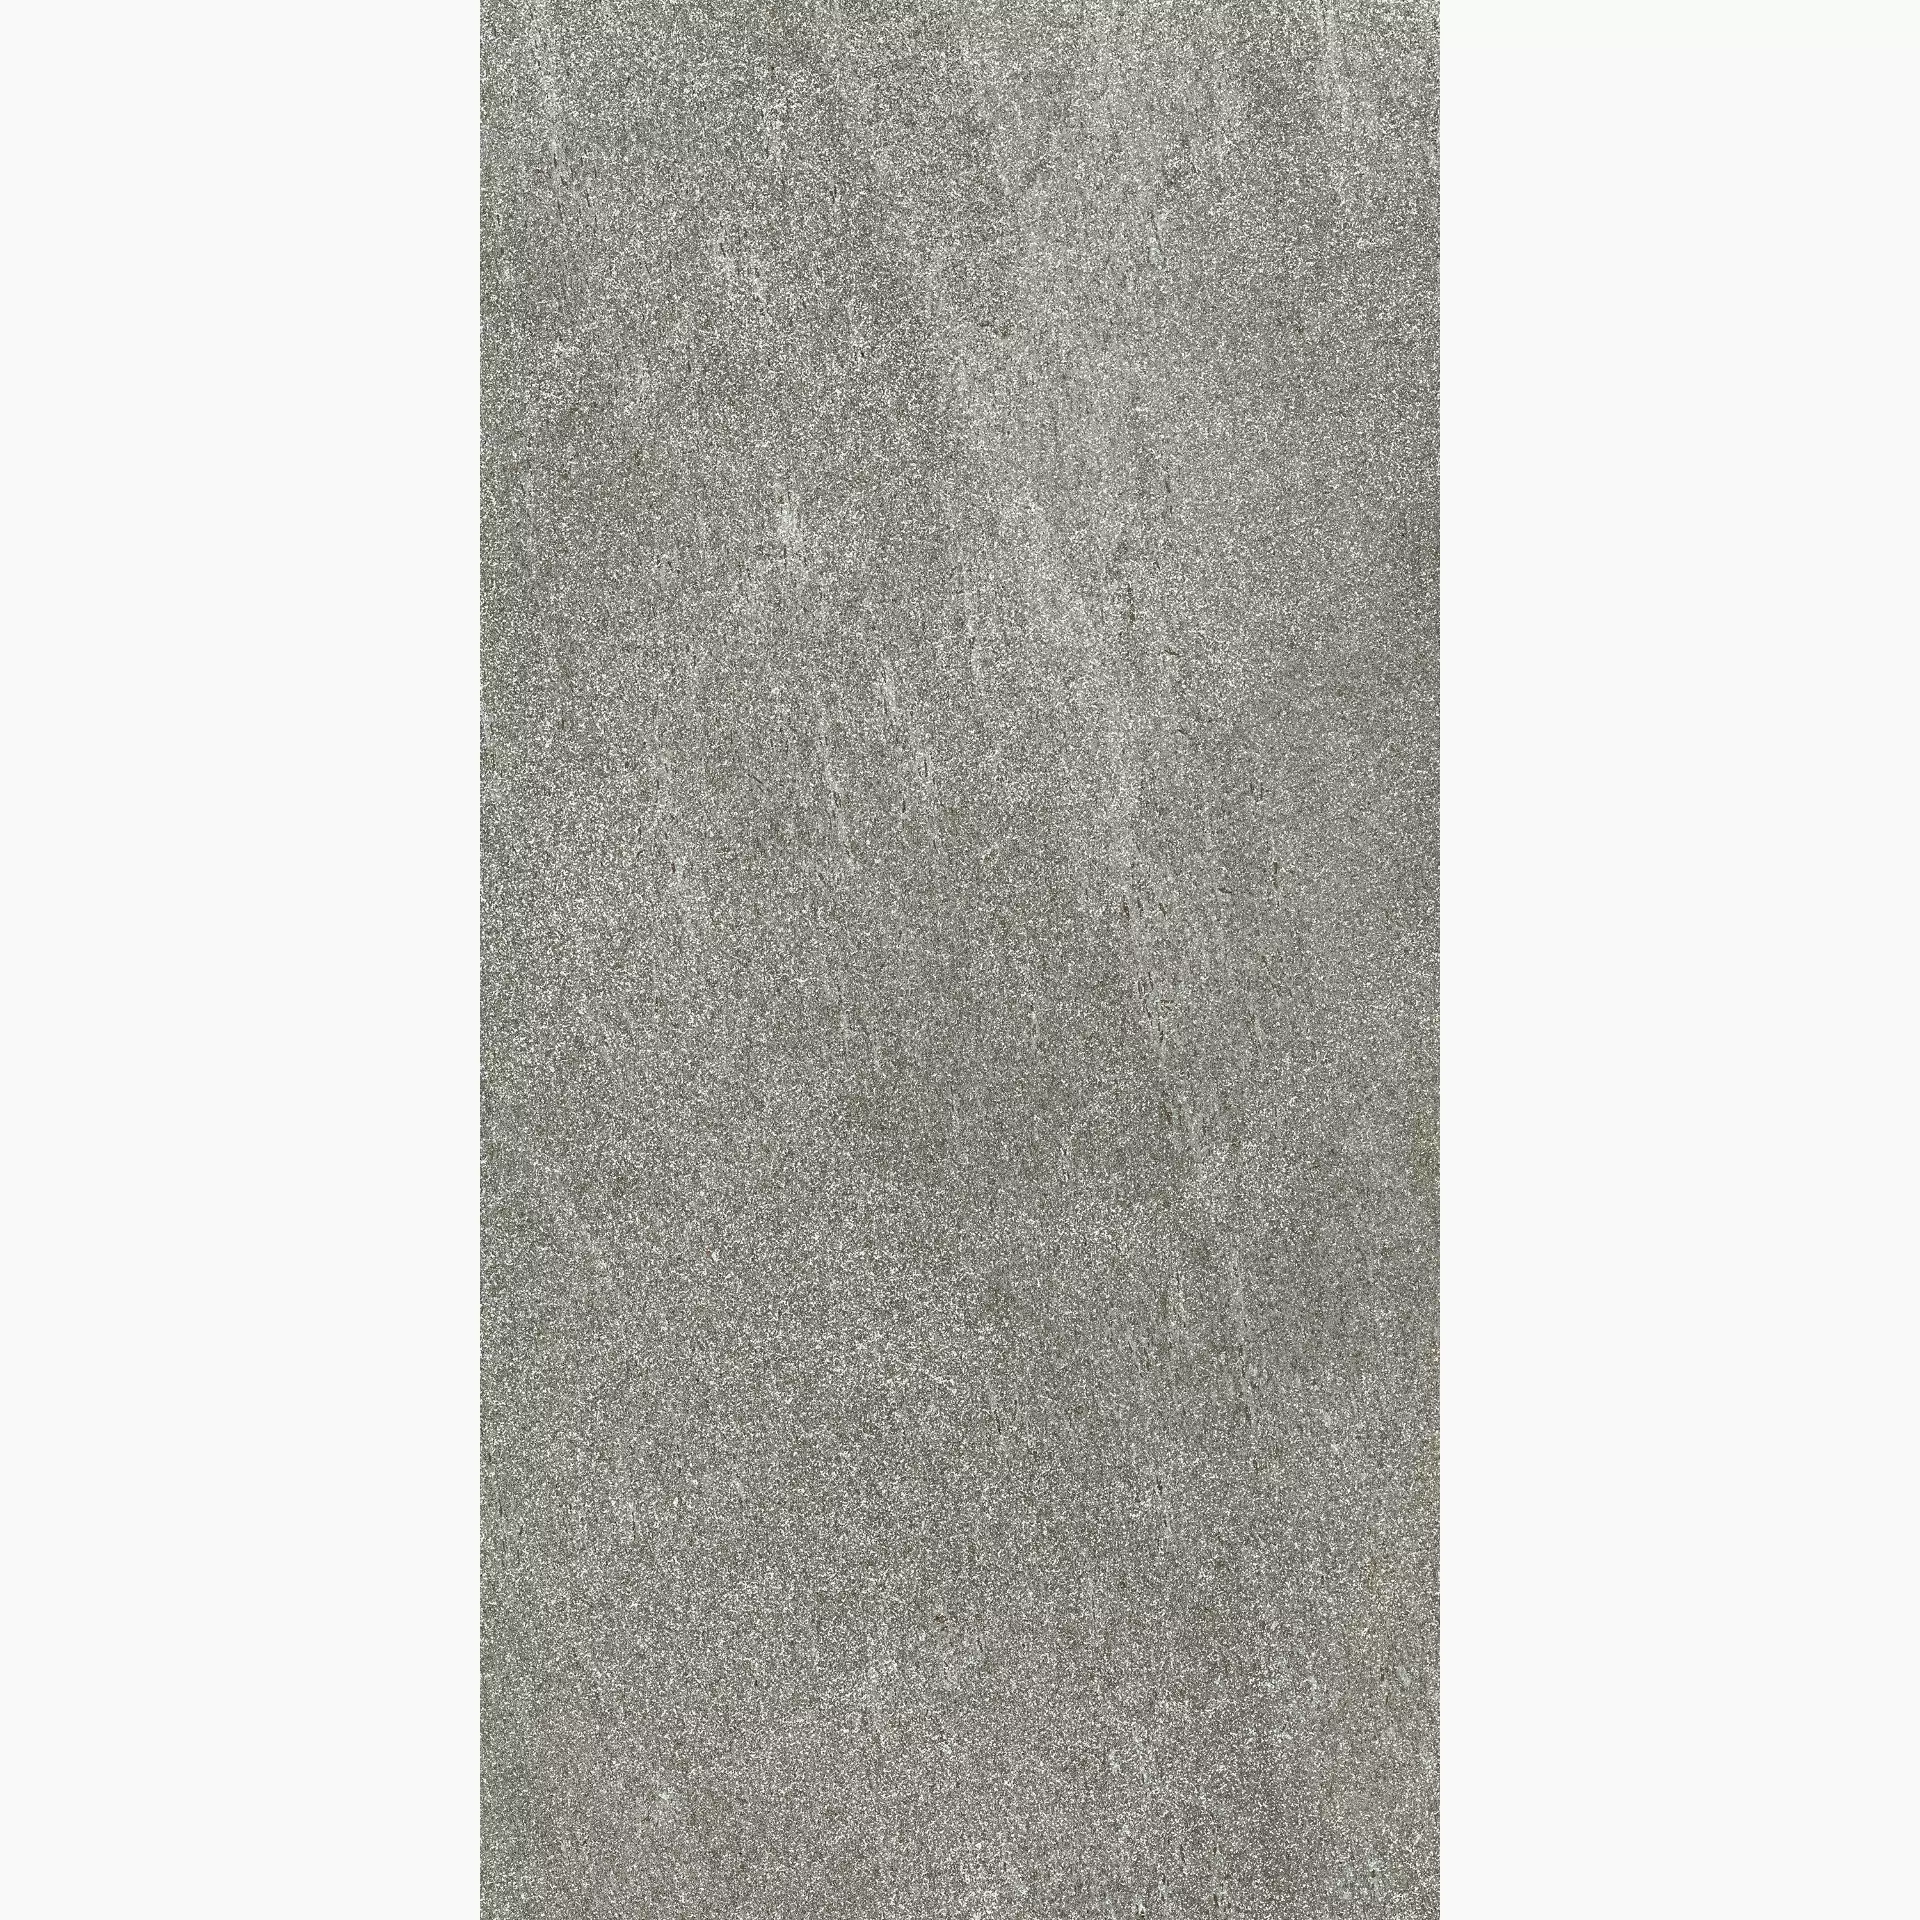 Cottodeste Blend Stone Mid Hammered Protect Mid EGXBS80 antibakteriell gehaemmert 60x120cm rektifiziert 20mm